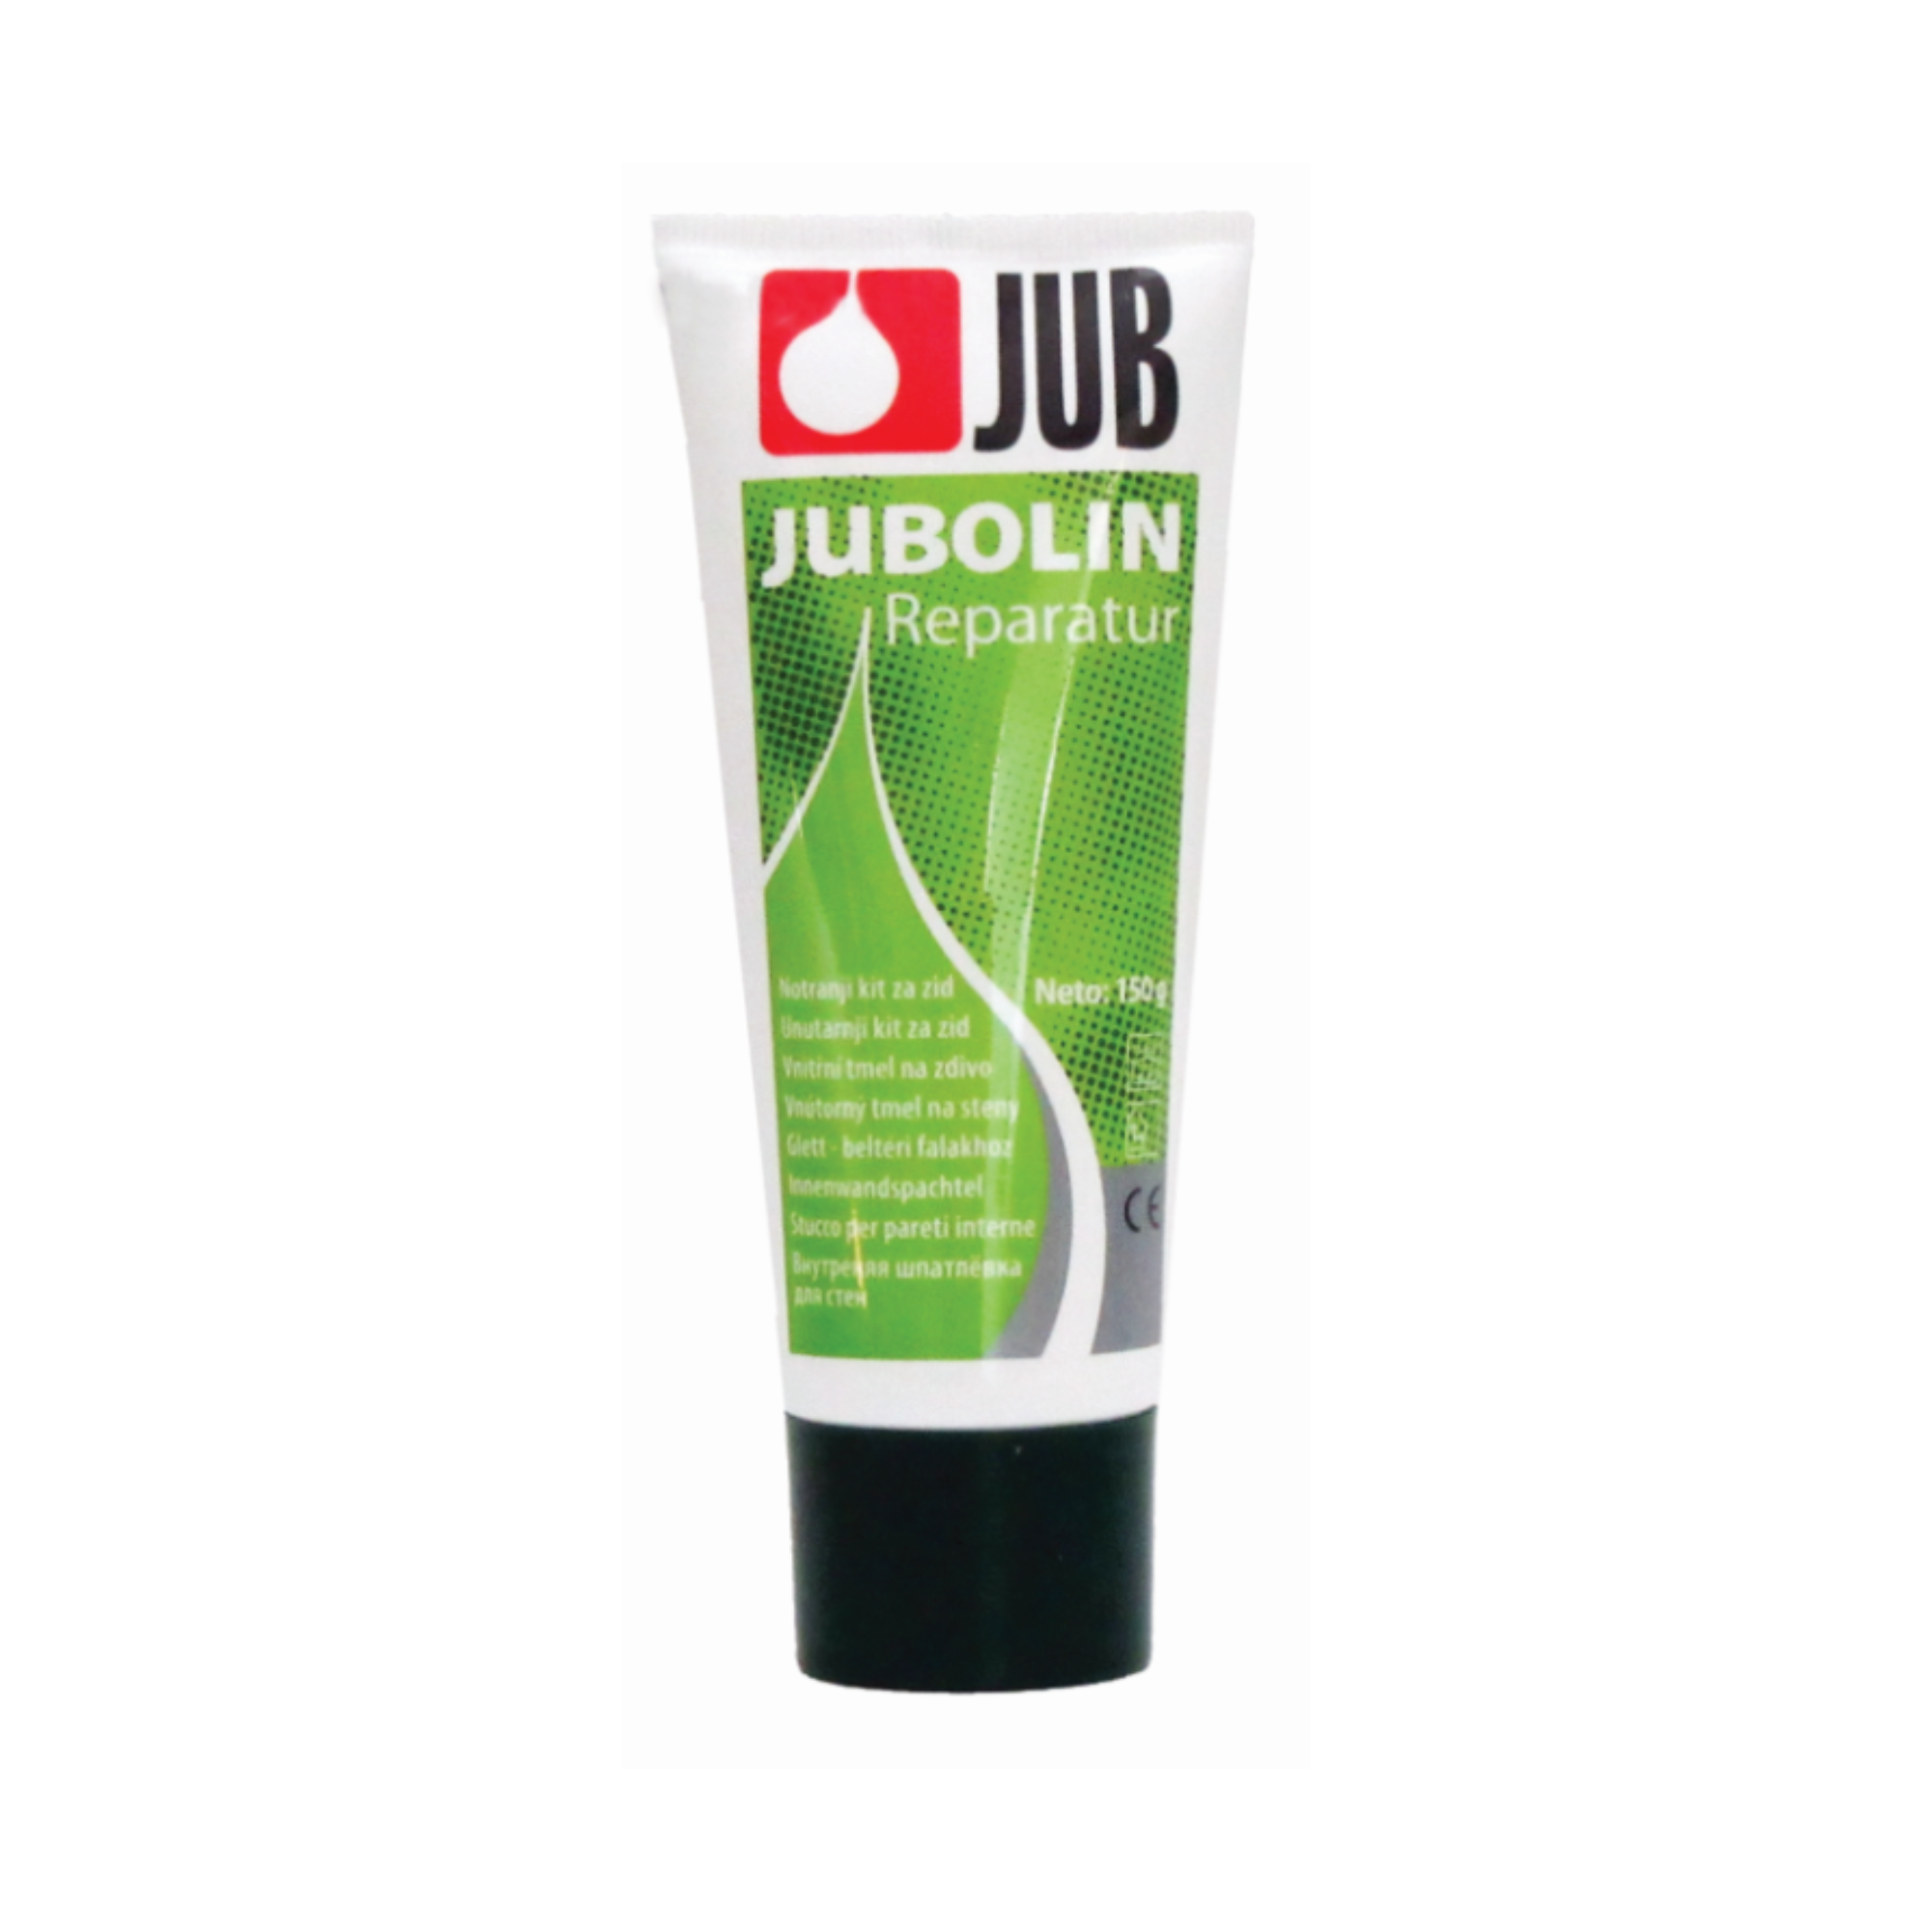 JUB JUBOLIN Reparatur vnútorný vyrovnávací tmel v tube